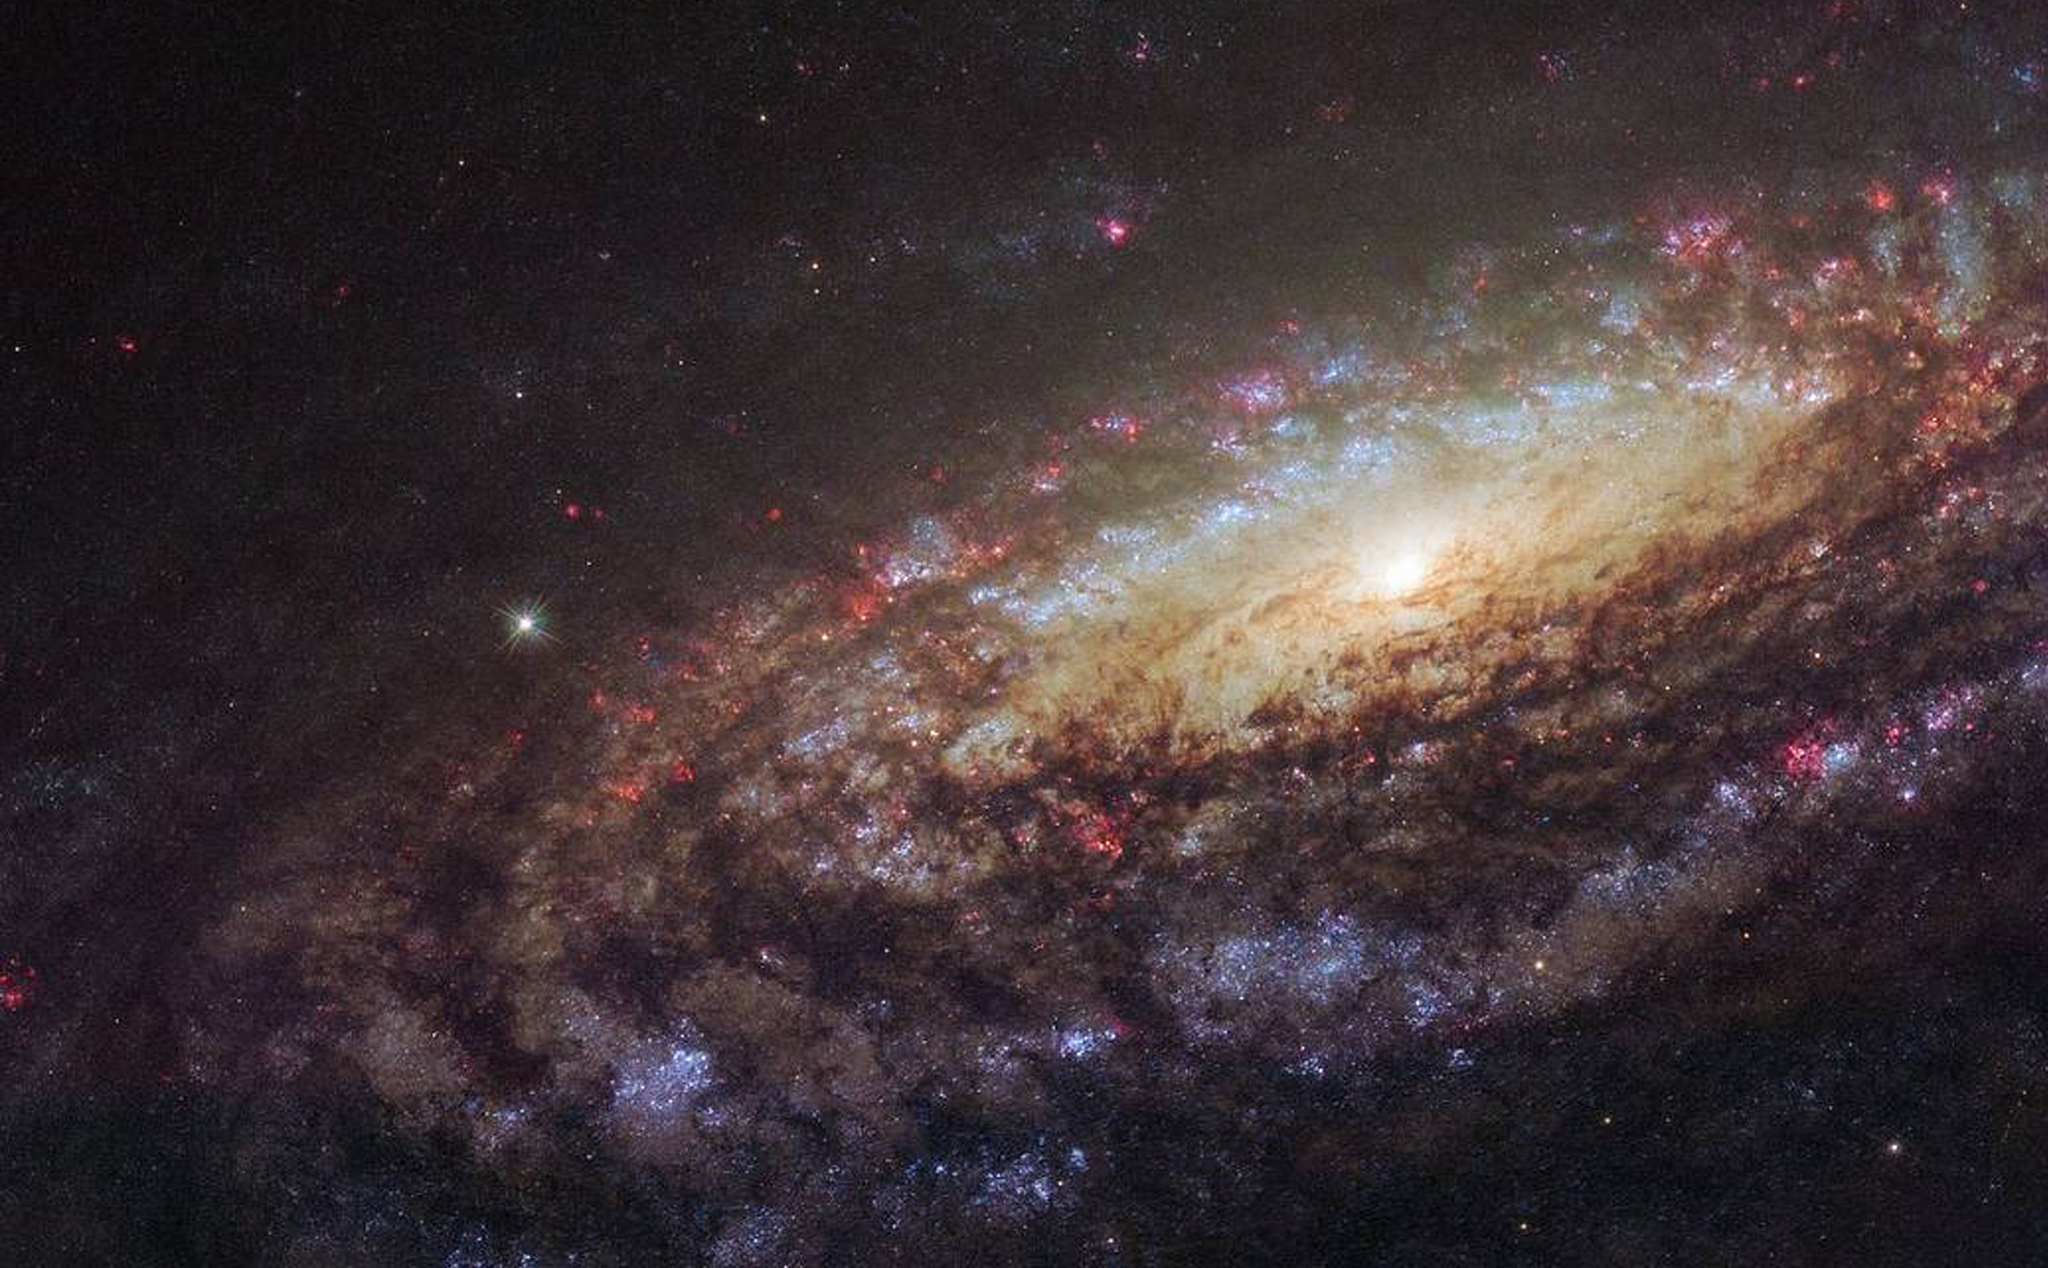 Kính Hubble: Kính Hubble là một trong những công cụ quan trọng nhất của ngành thiên văn học. Nhờ vào sức mạnh của Kính Hubble, chúng ta có thể chiêm ngưỡng những vùng trời xa xôi và những thiên hà kỳ lạ. Với những hình ảnh rực rỡ và đầy sức sống trên Kính Hubble, bạn sẽ không thể rời mắt khỏi chúng.